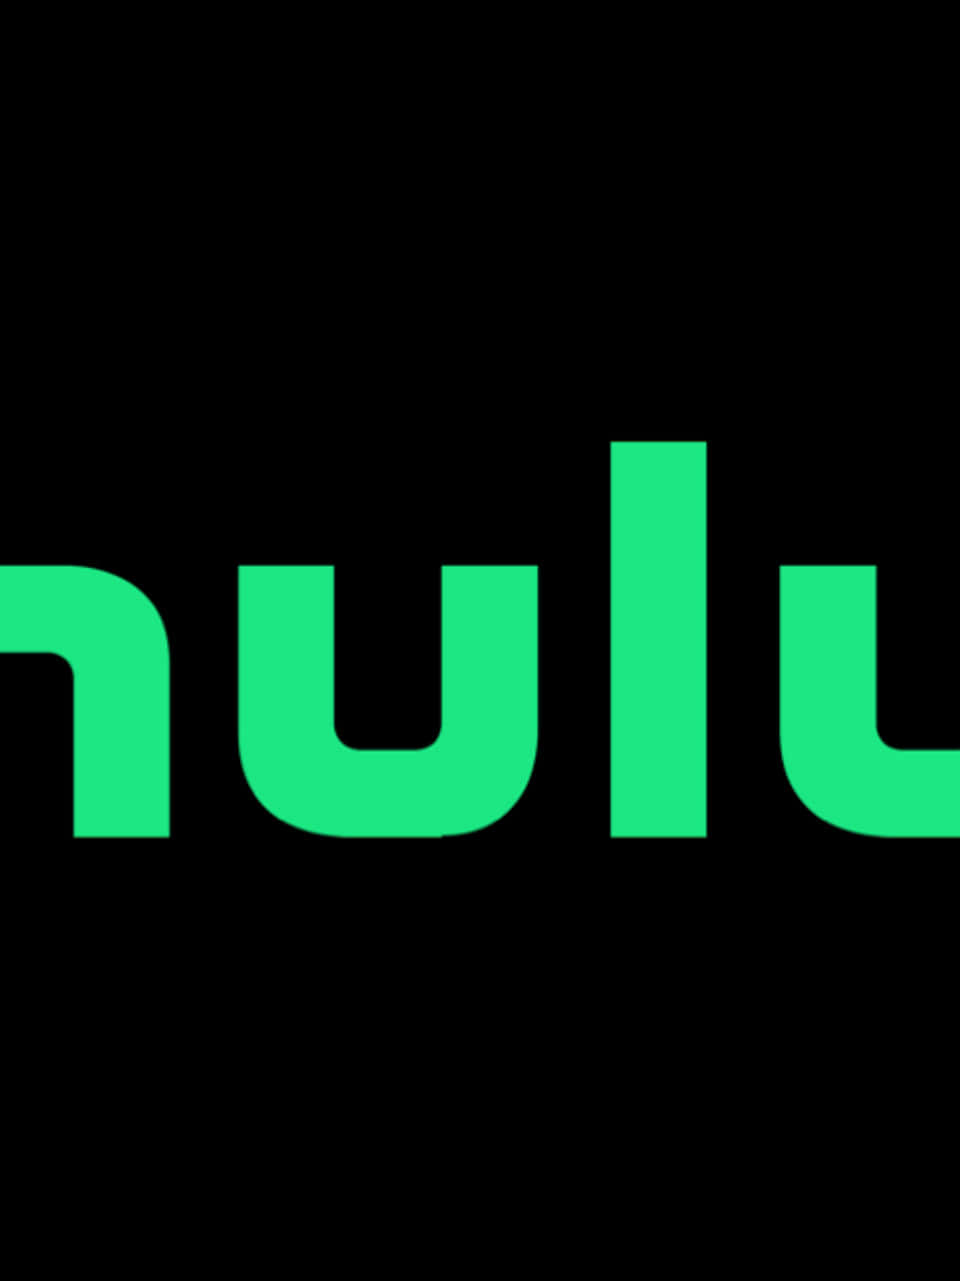 Logodi Hulu Con Lettere Verdi Su Sfondo Nero